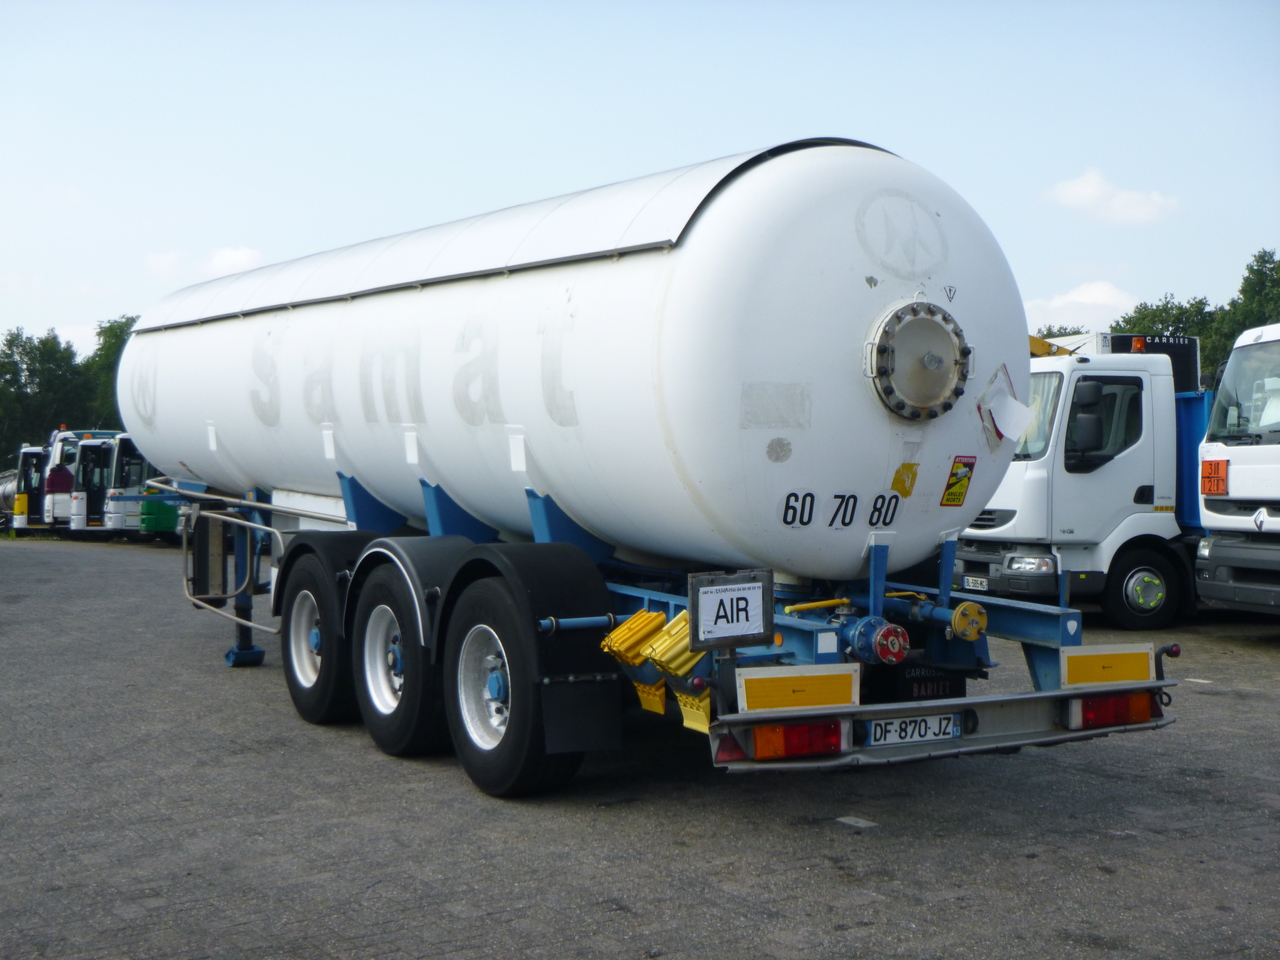 Cisterna semirremolque para transporte de gas Guhur Low-pressure gas tank steel 31.5 m3 / 10 bar (methyl chloride): foto 4